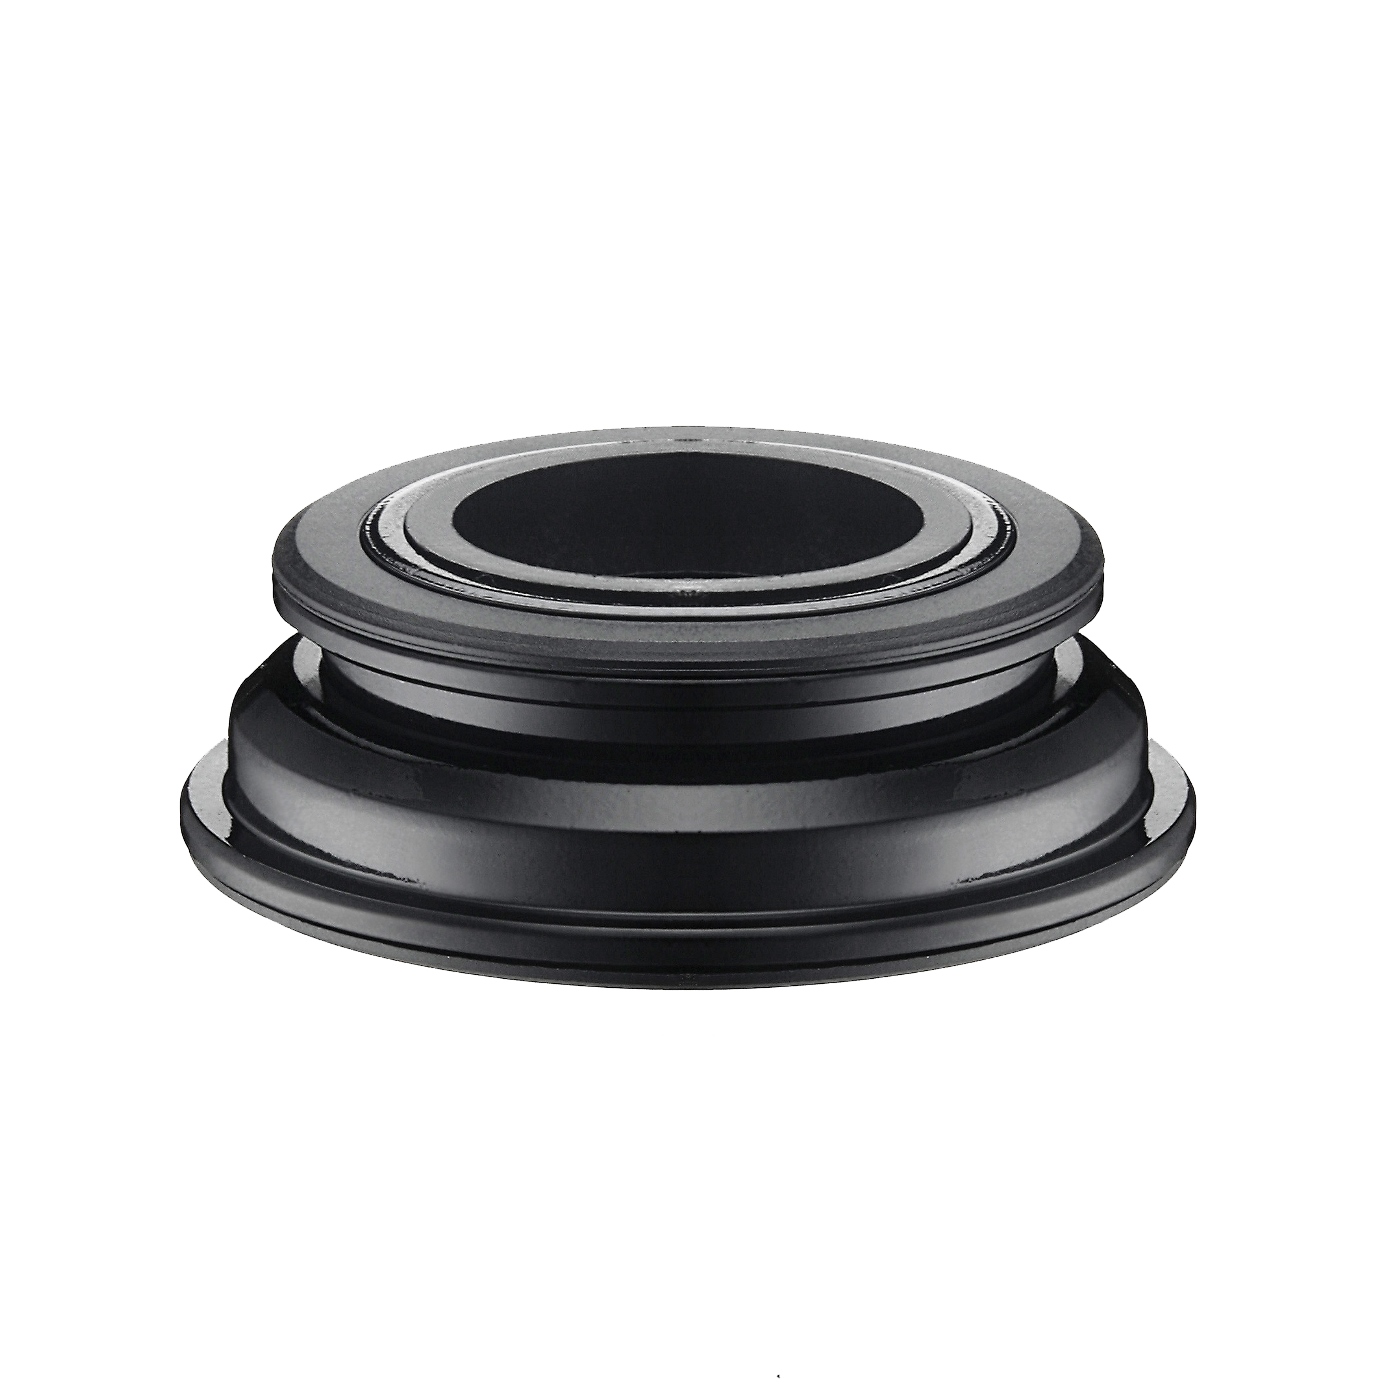 Taza de Direccion NECO H159 1 1/8” x 1.5” Semi Integrada sin Rosca Balero Semi Sellado Acero Negro